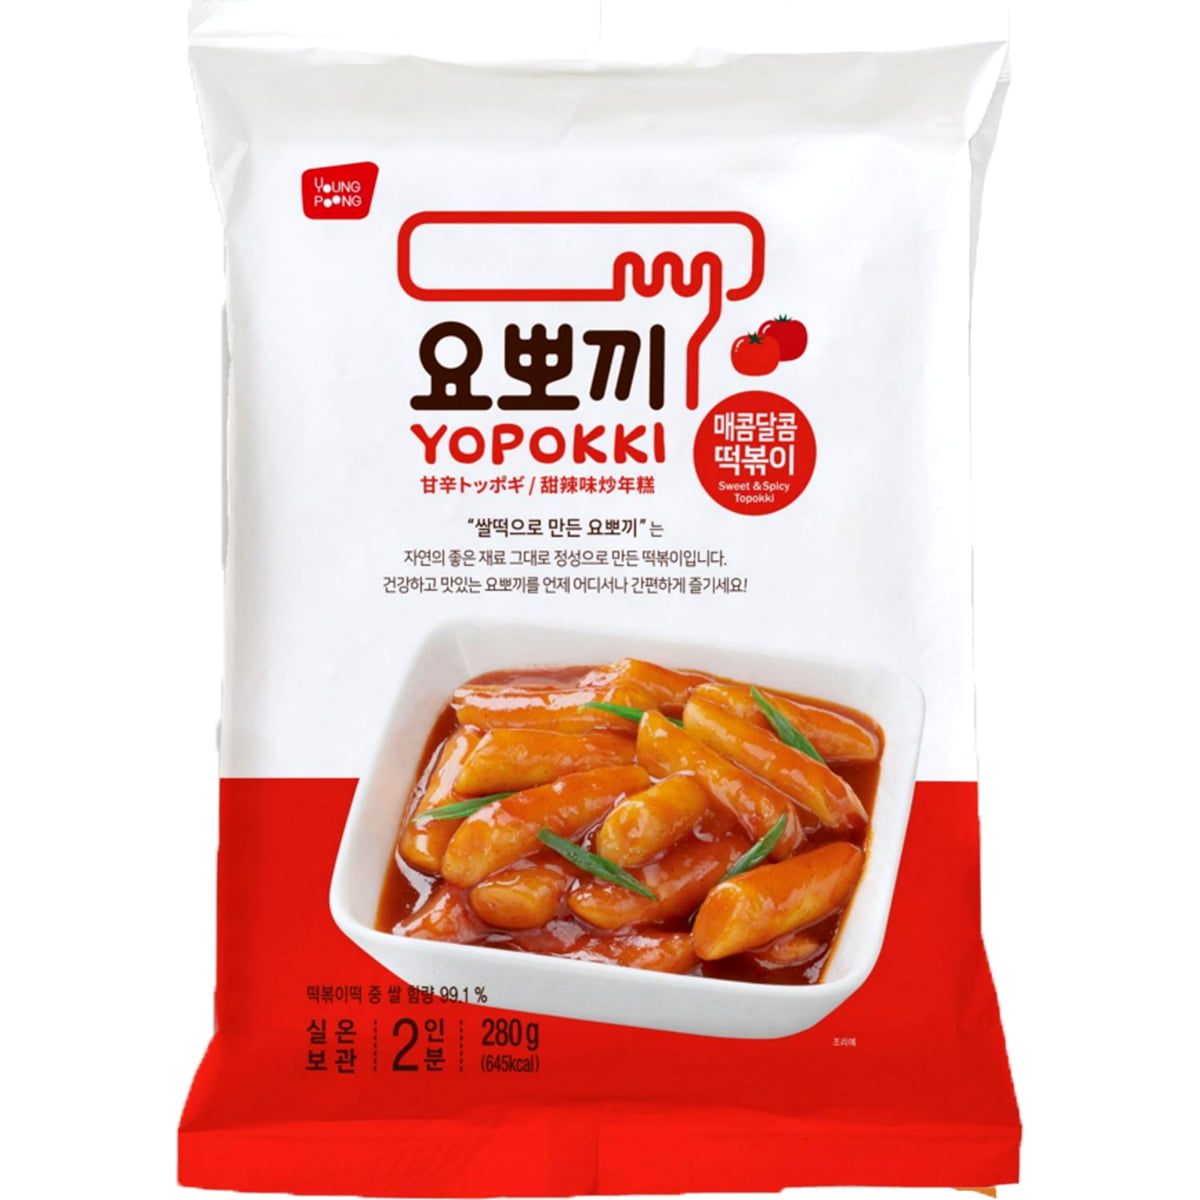 Yopokki Bolinho de Arroz Coreano Instantâneo sabor Original Sweet Spicy Topokki Pack - 280 gramas